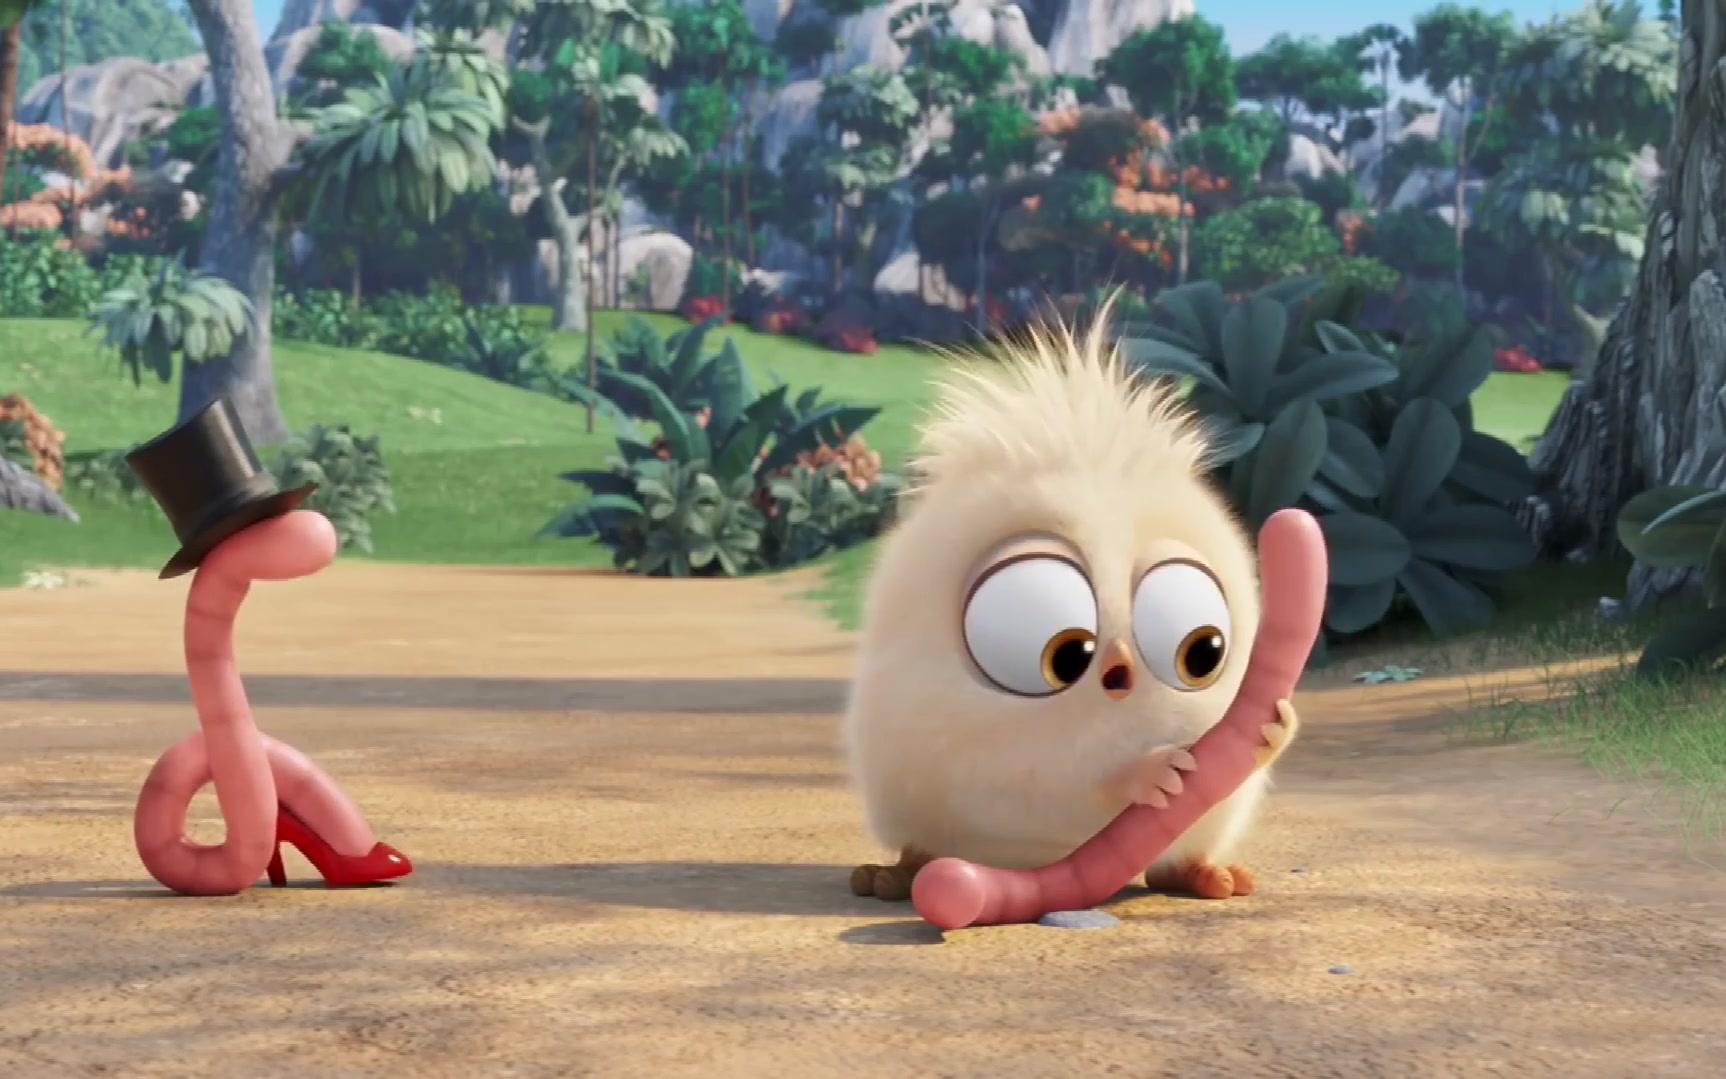 经典动画片,一只小鸡和一只虫虫的故事,一对特殊的小伙伴